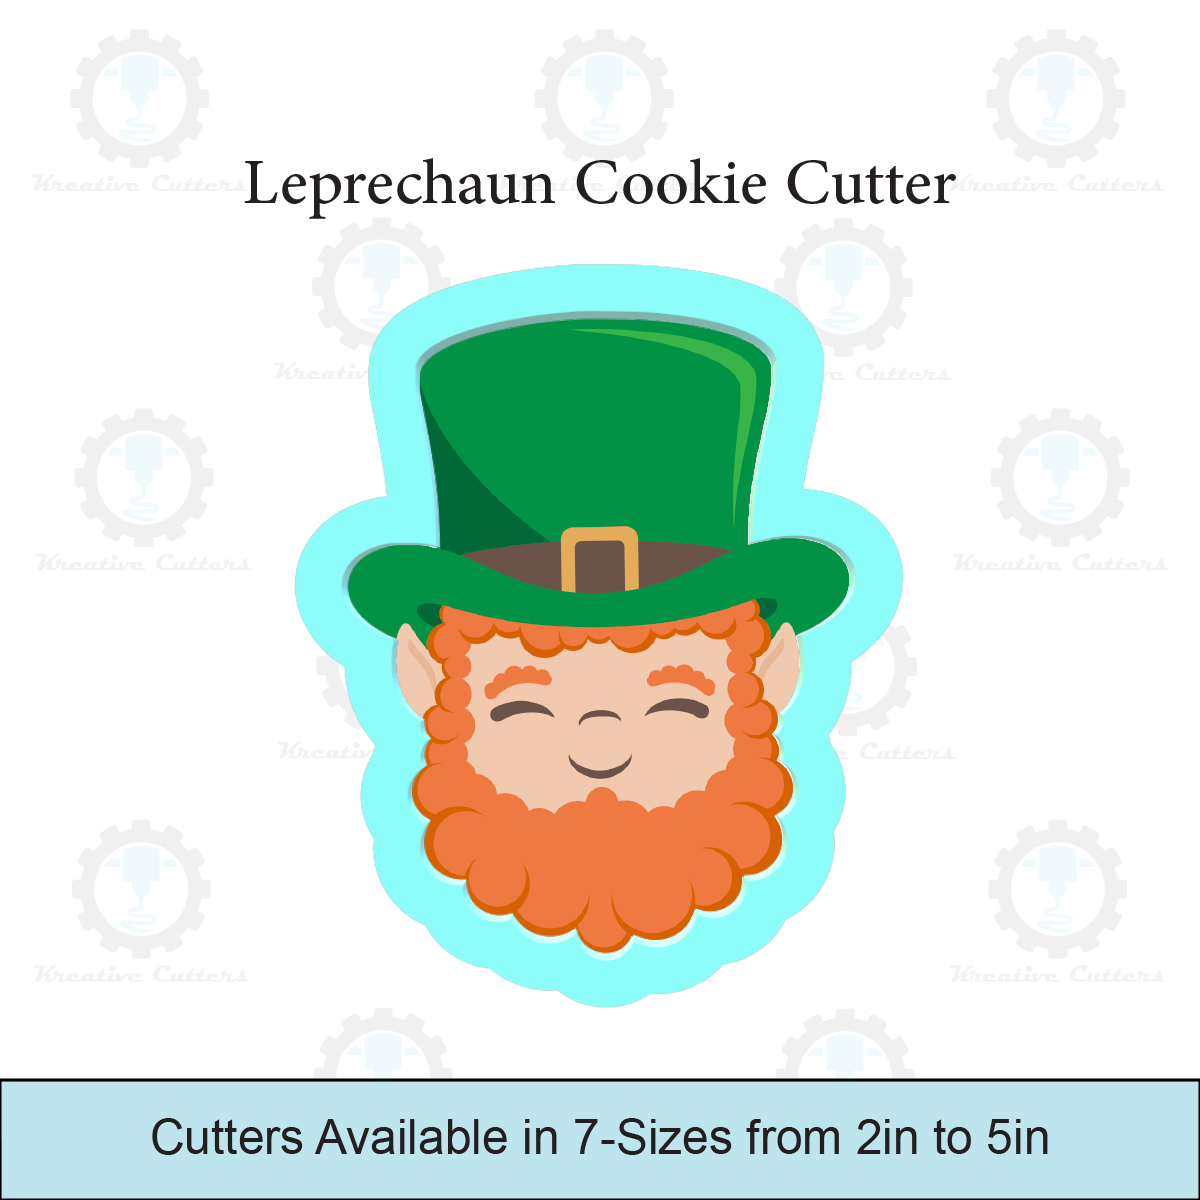 Leprechaun Cookie Cutter